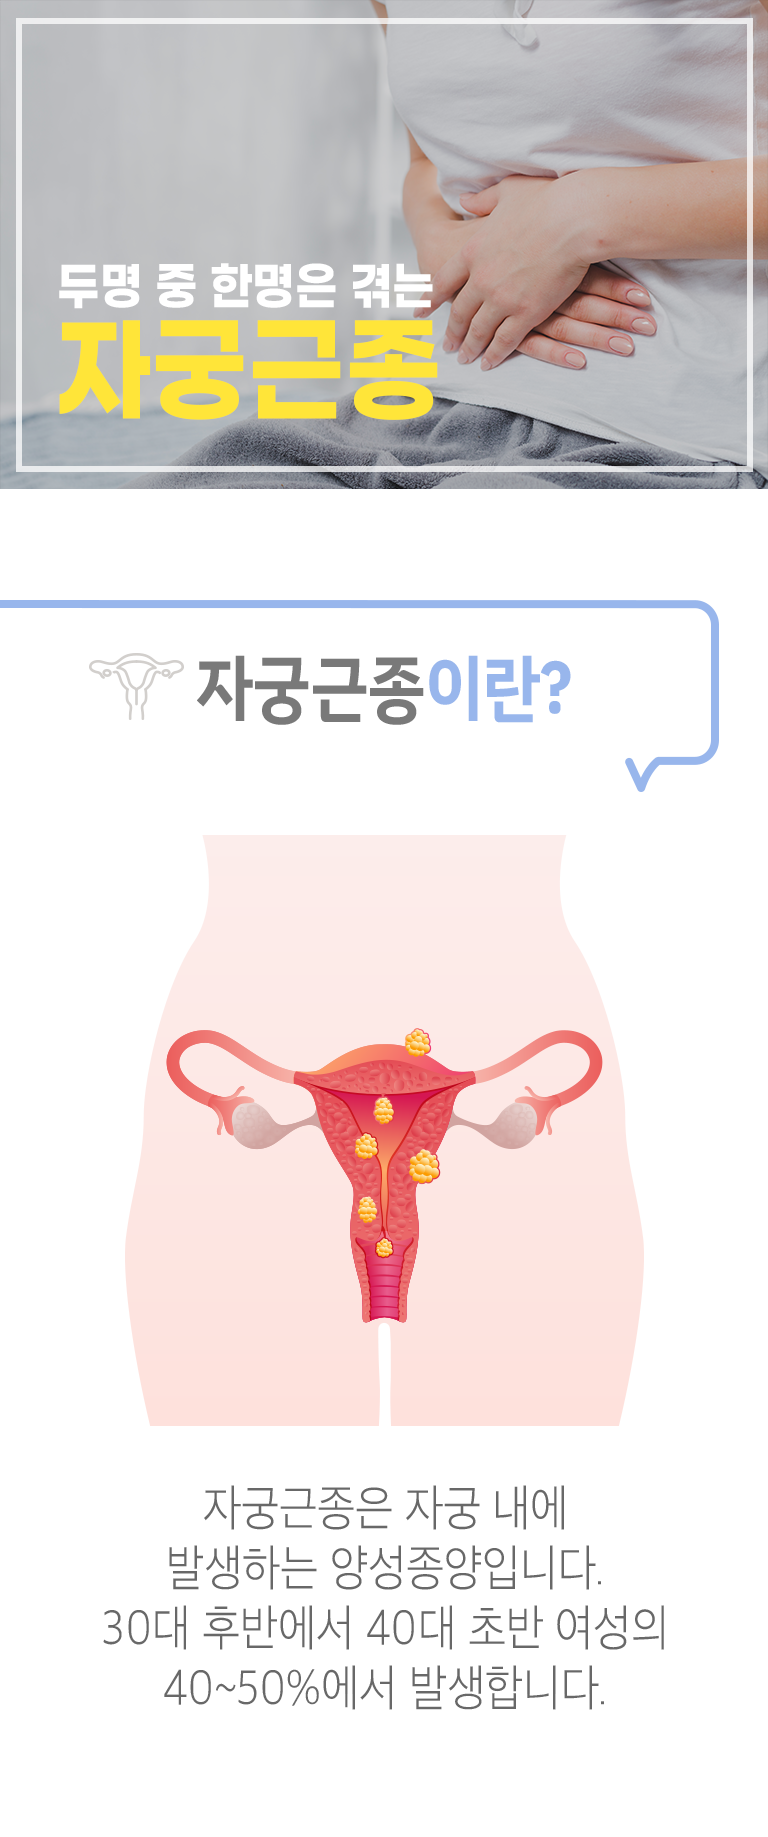 두명 중 한명은 겪는 자궁근종. 자궁근종이란? ▷ 자궁근종은 자궁 내에 발생하는 양성종양입니다. 30대 후반에서 40대 초반 여성의 40~50%에서 발생합니다.